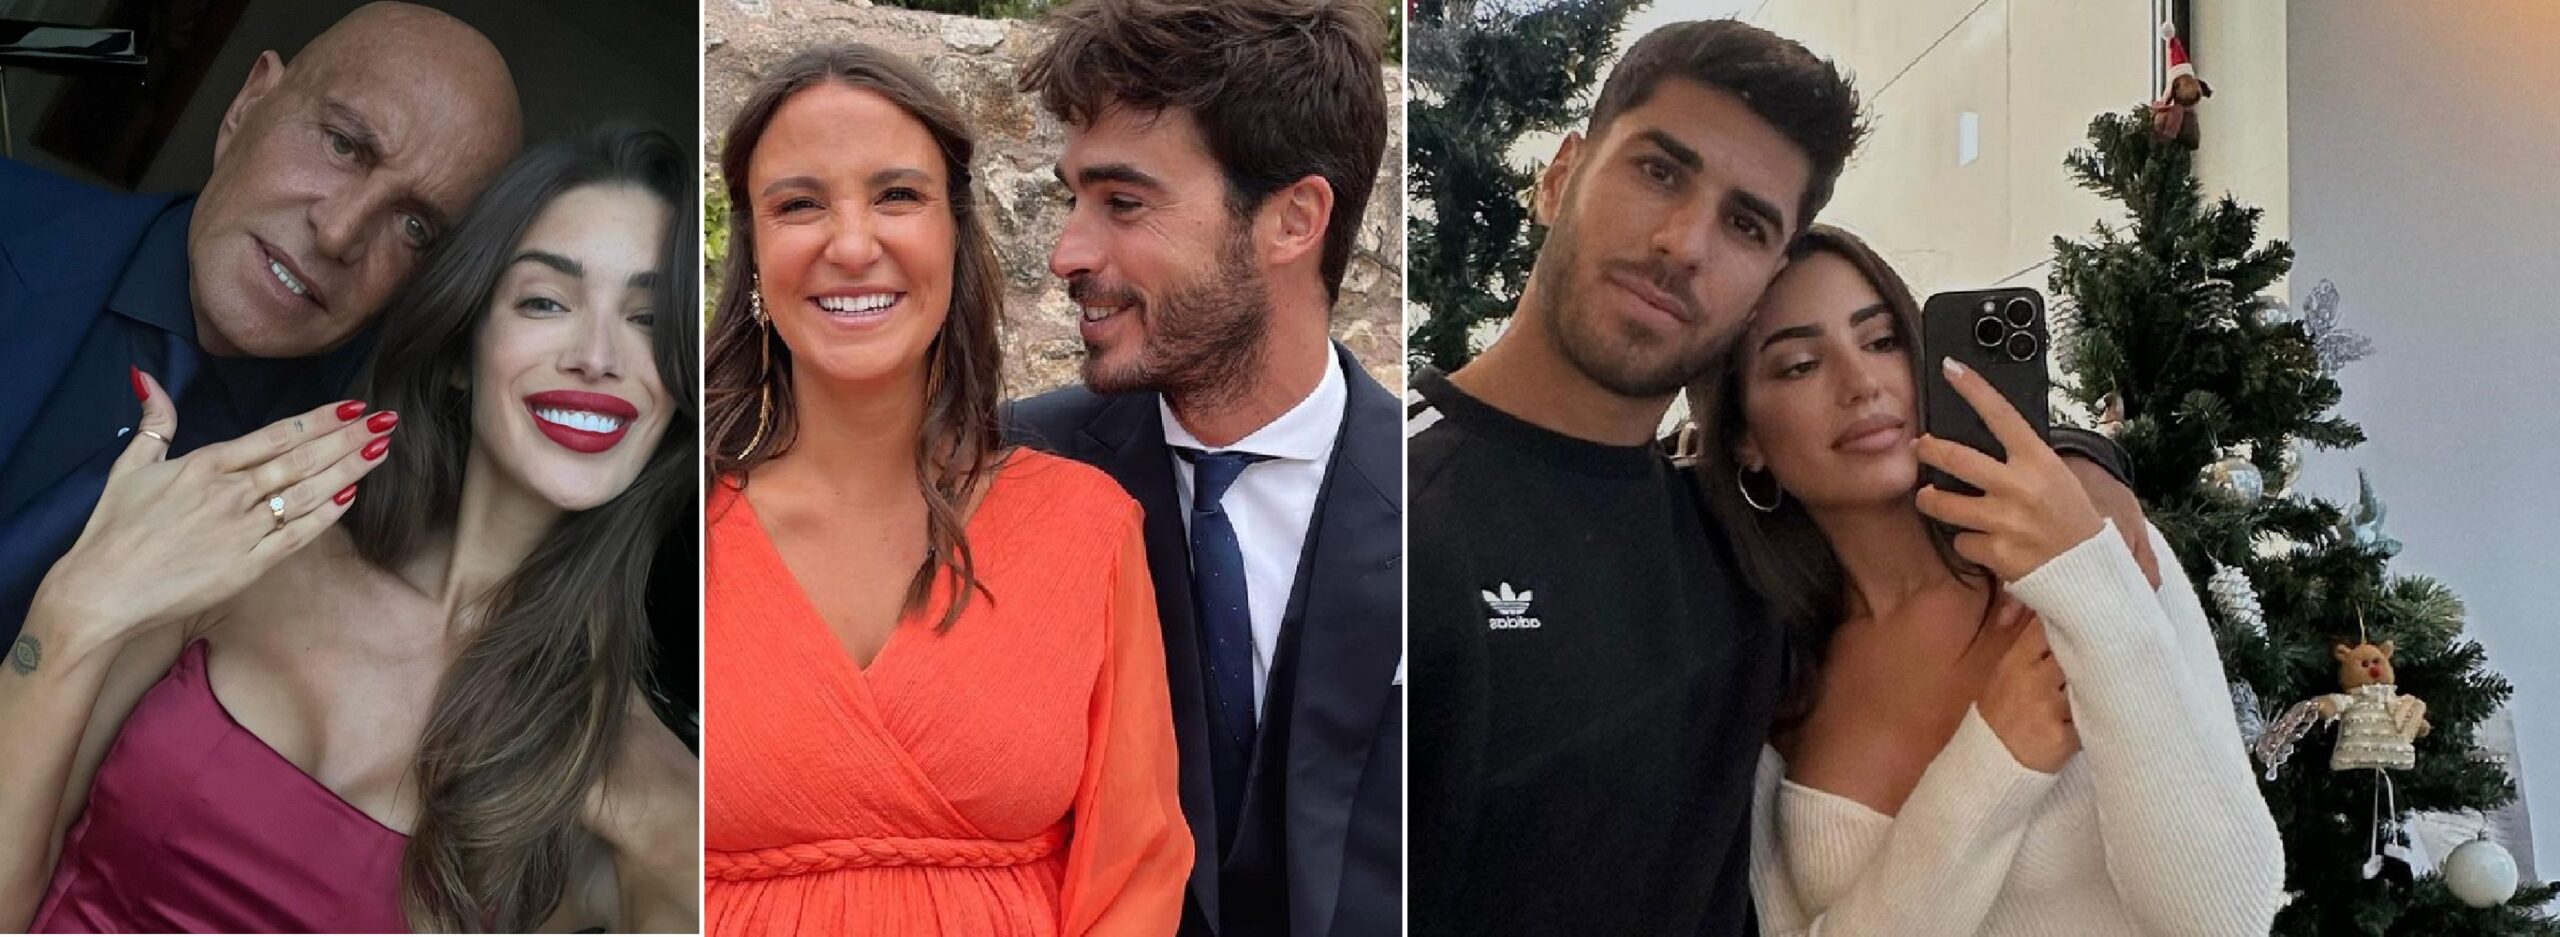 Kiko Matamoros, Marta Pombo, actores, modelos y futbolistas celebrarán su boda en el año 2023